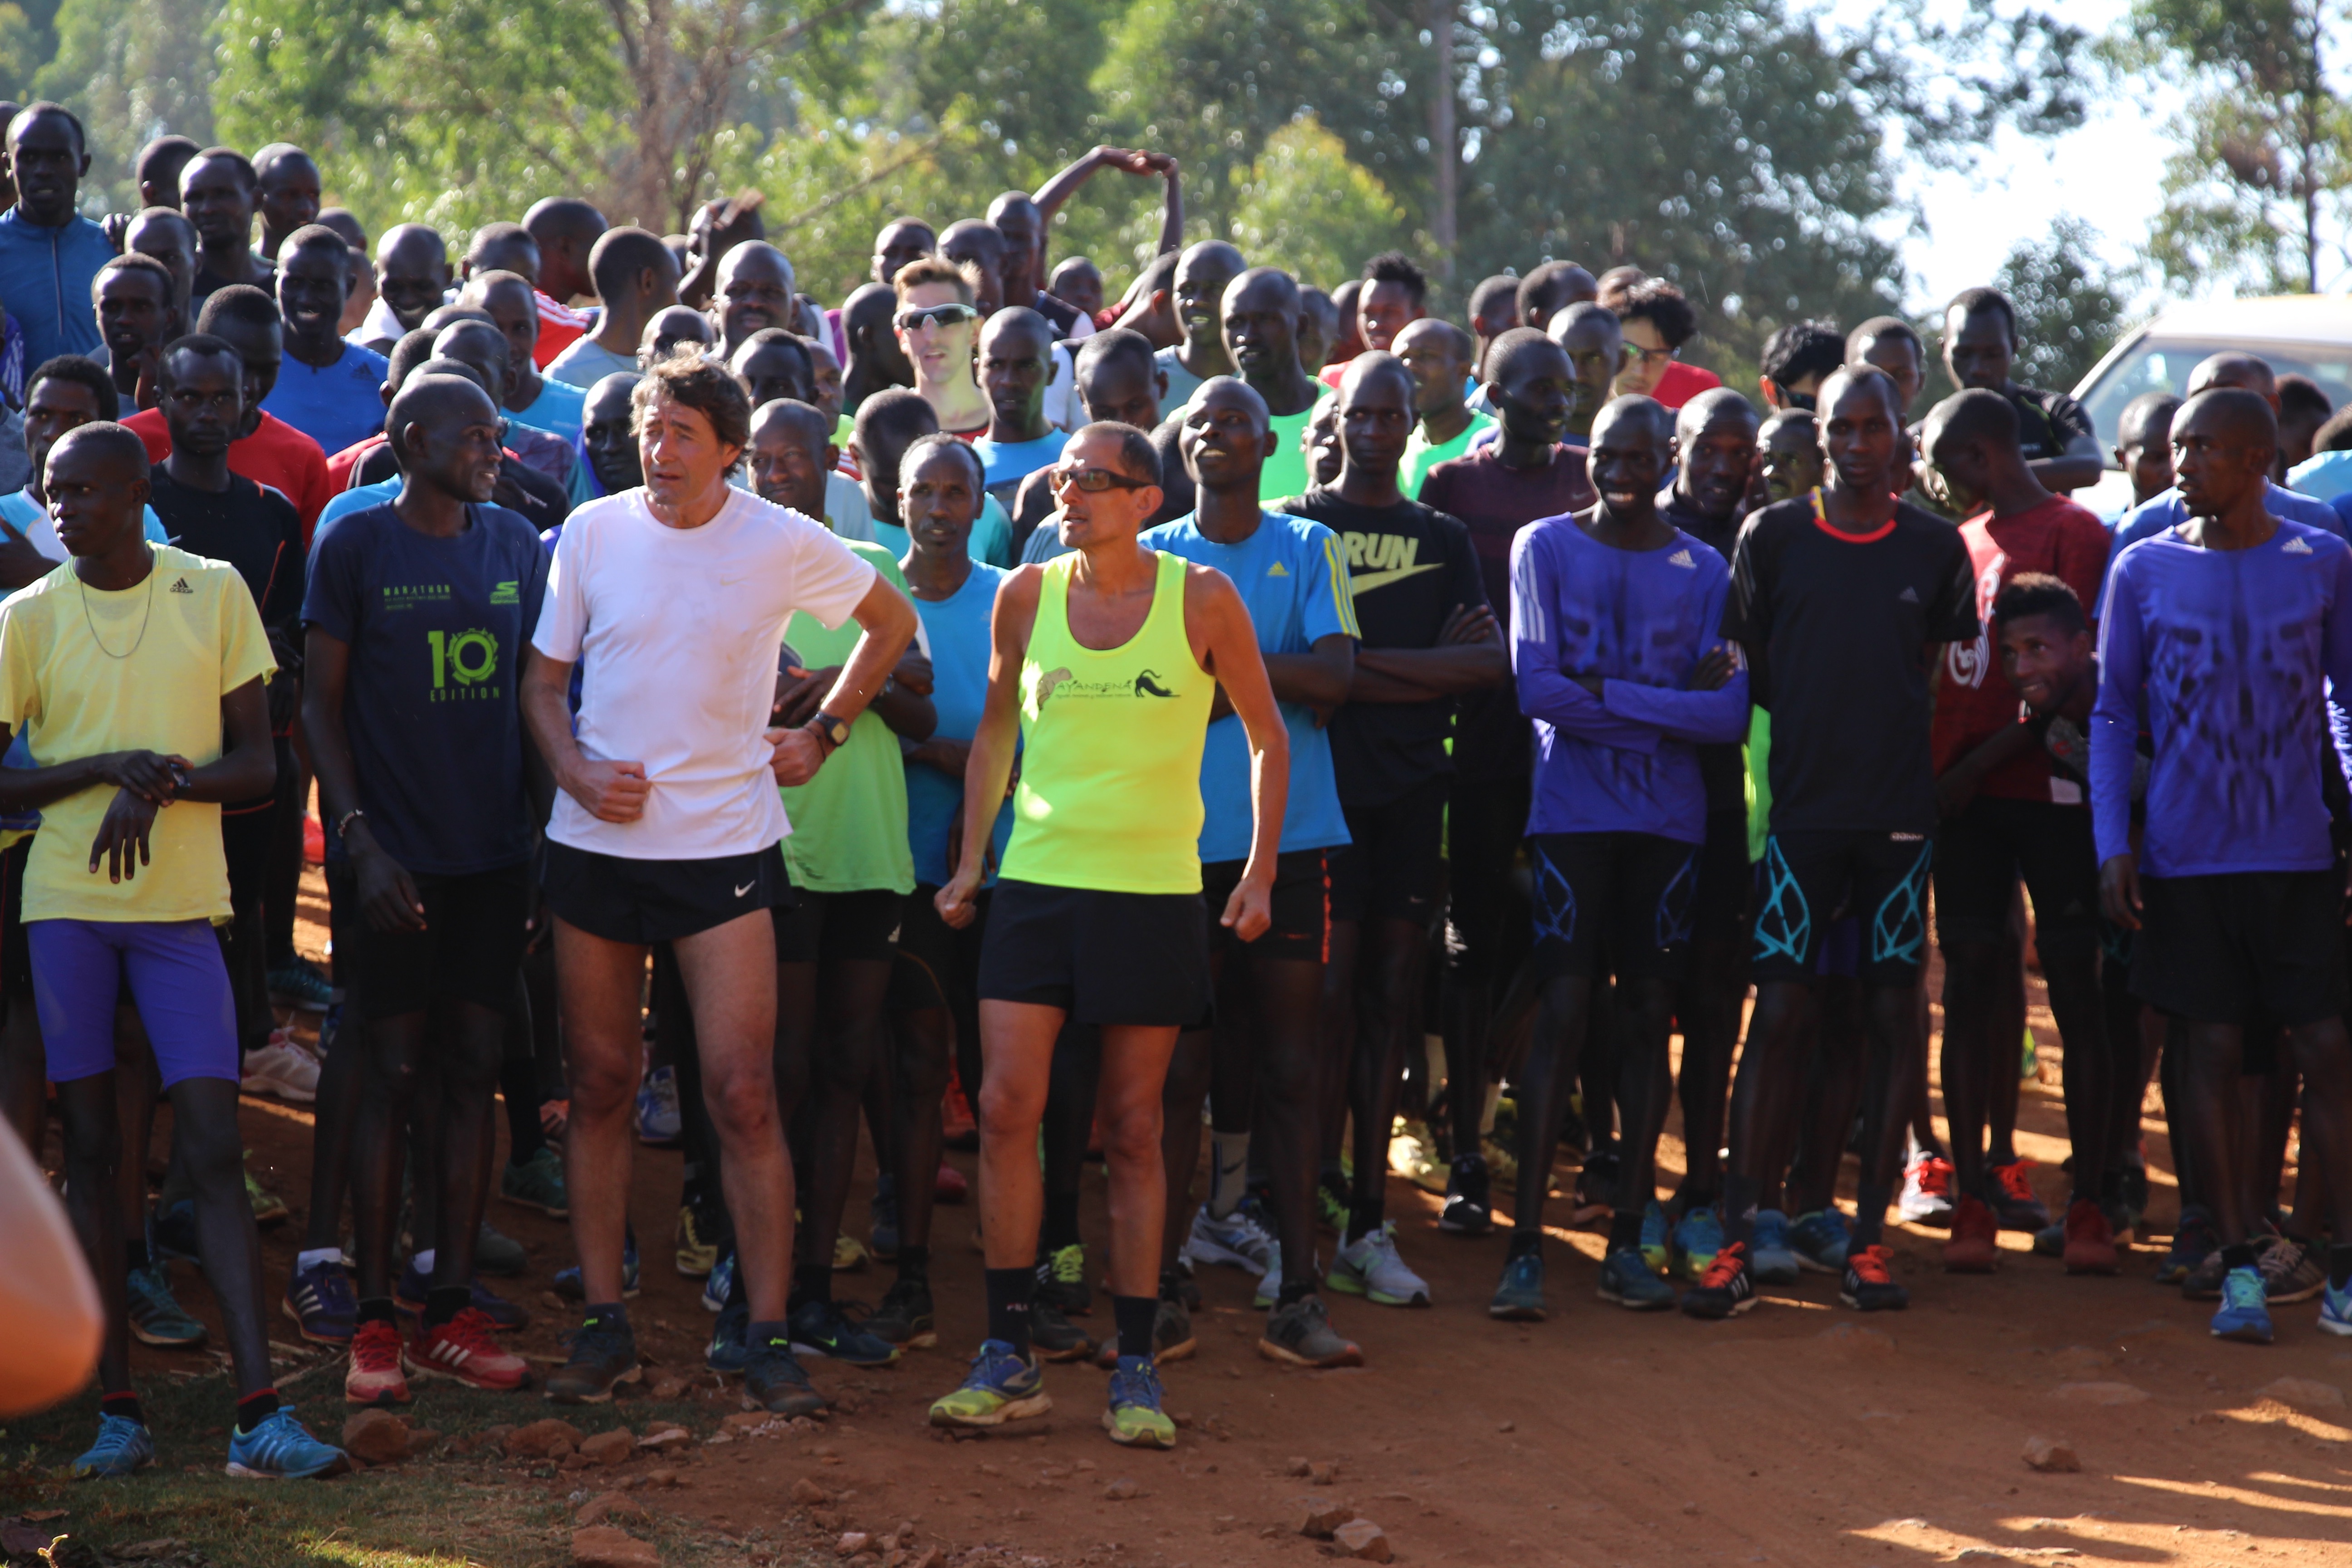 Foto 1 - THE HEART OF KENYAN RUNNING: Corsa, benessere, cultura